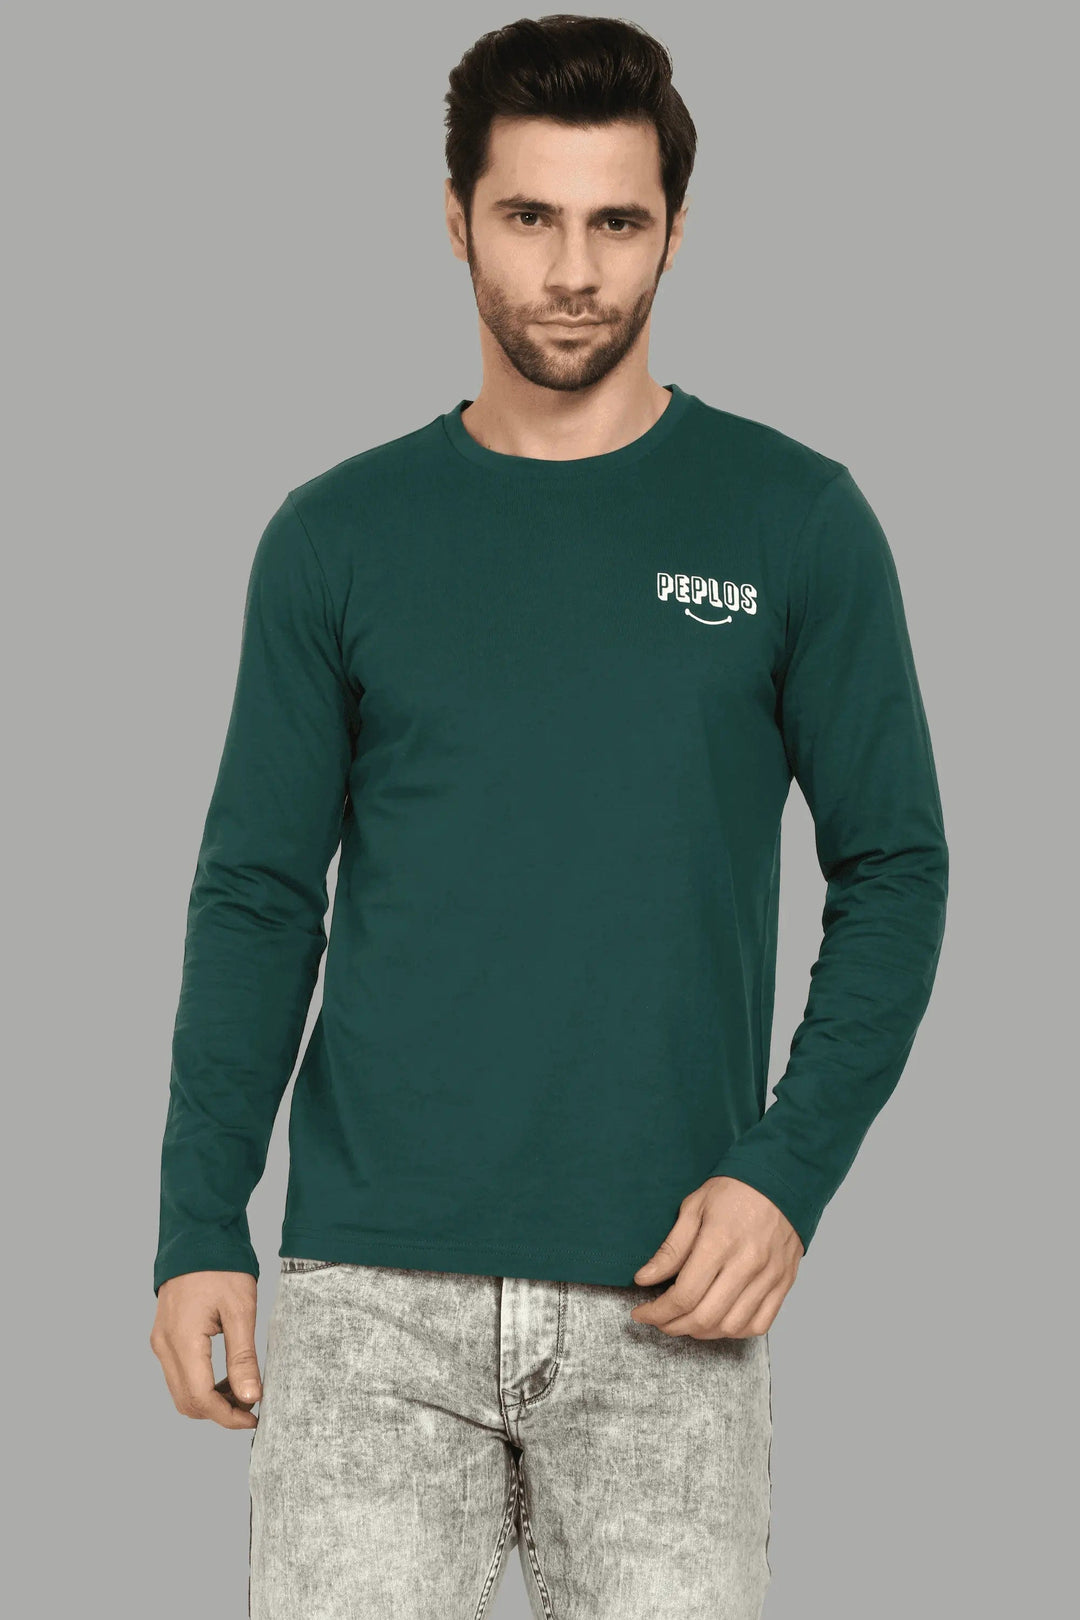 Full Sleeve Green Round Neck T-Shirt For Men - Peplos Jeans 